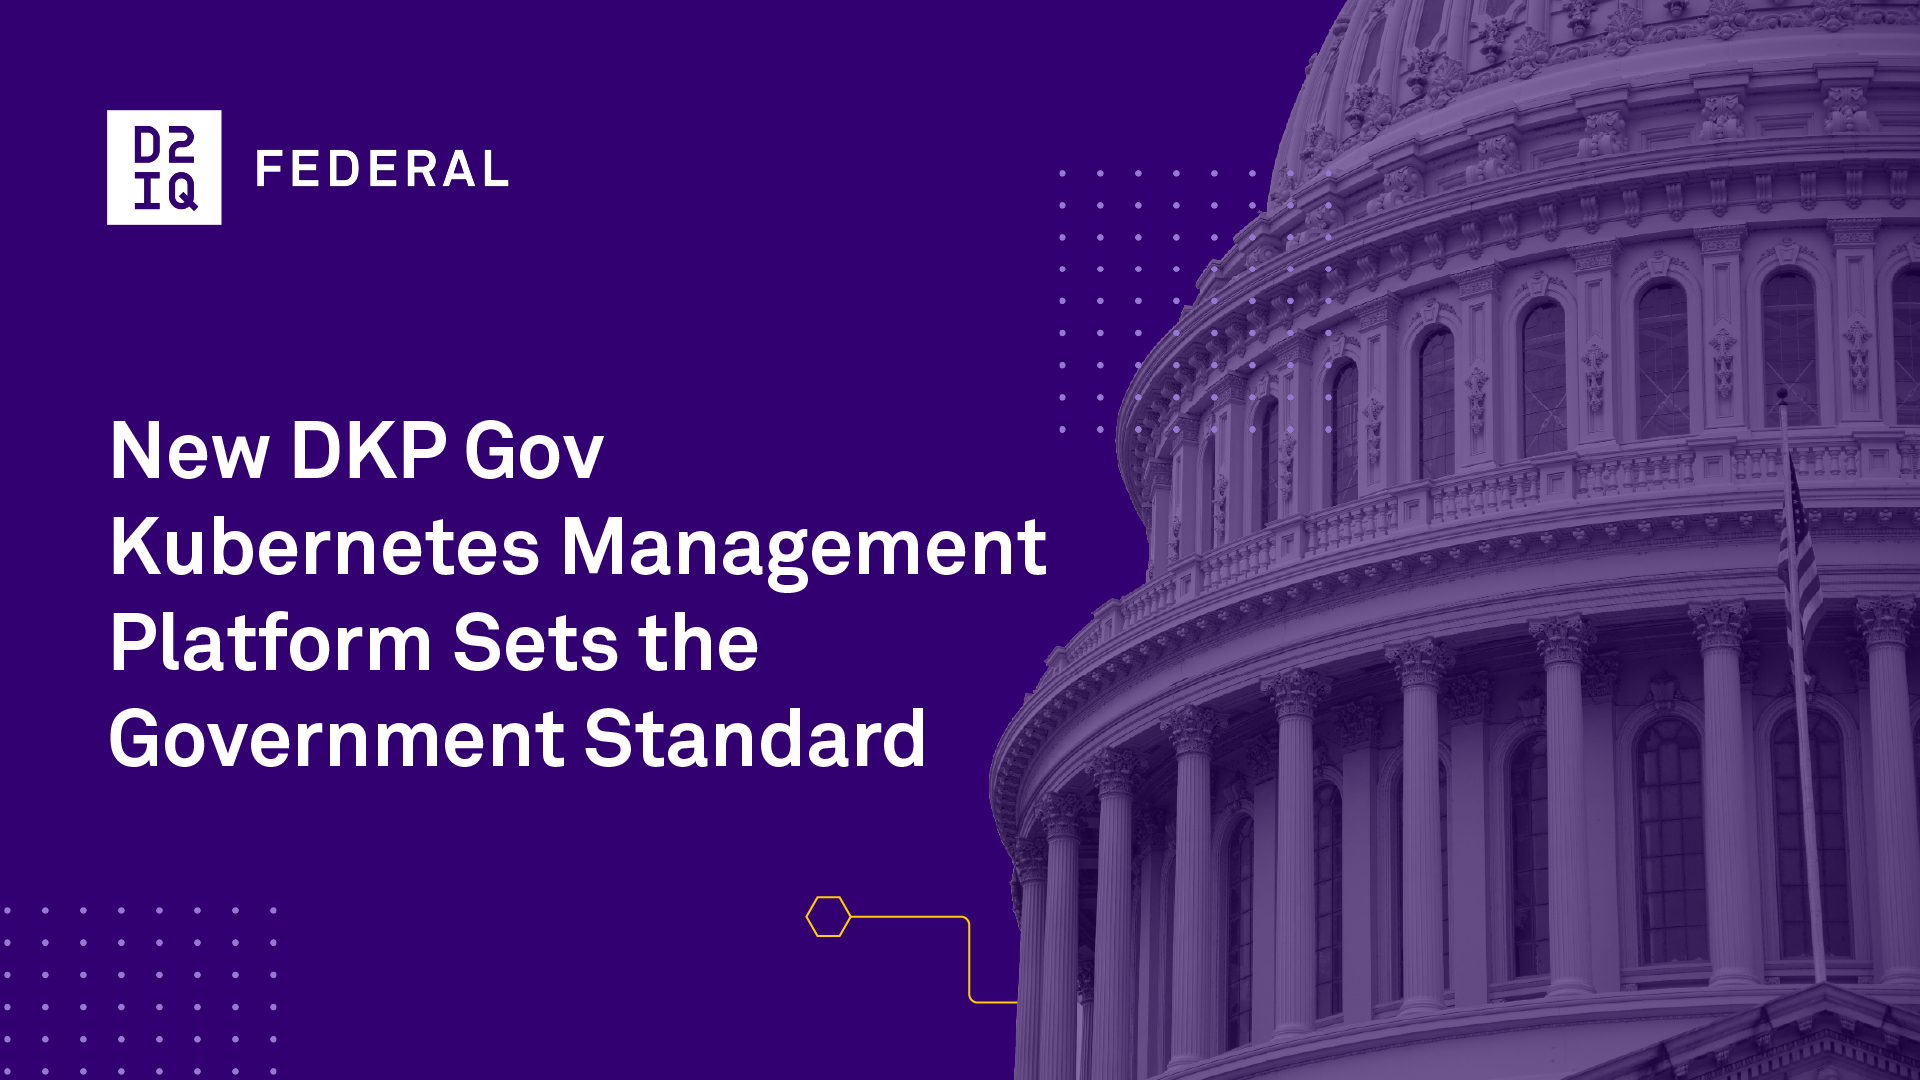 DKP Gov Kubernetes Management Platform Sets Standard | D2iQ